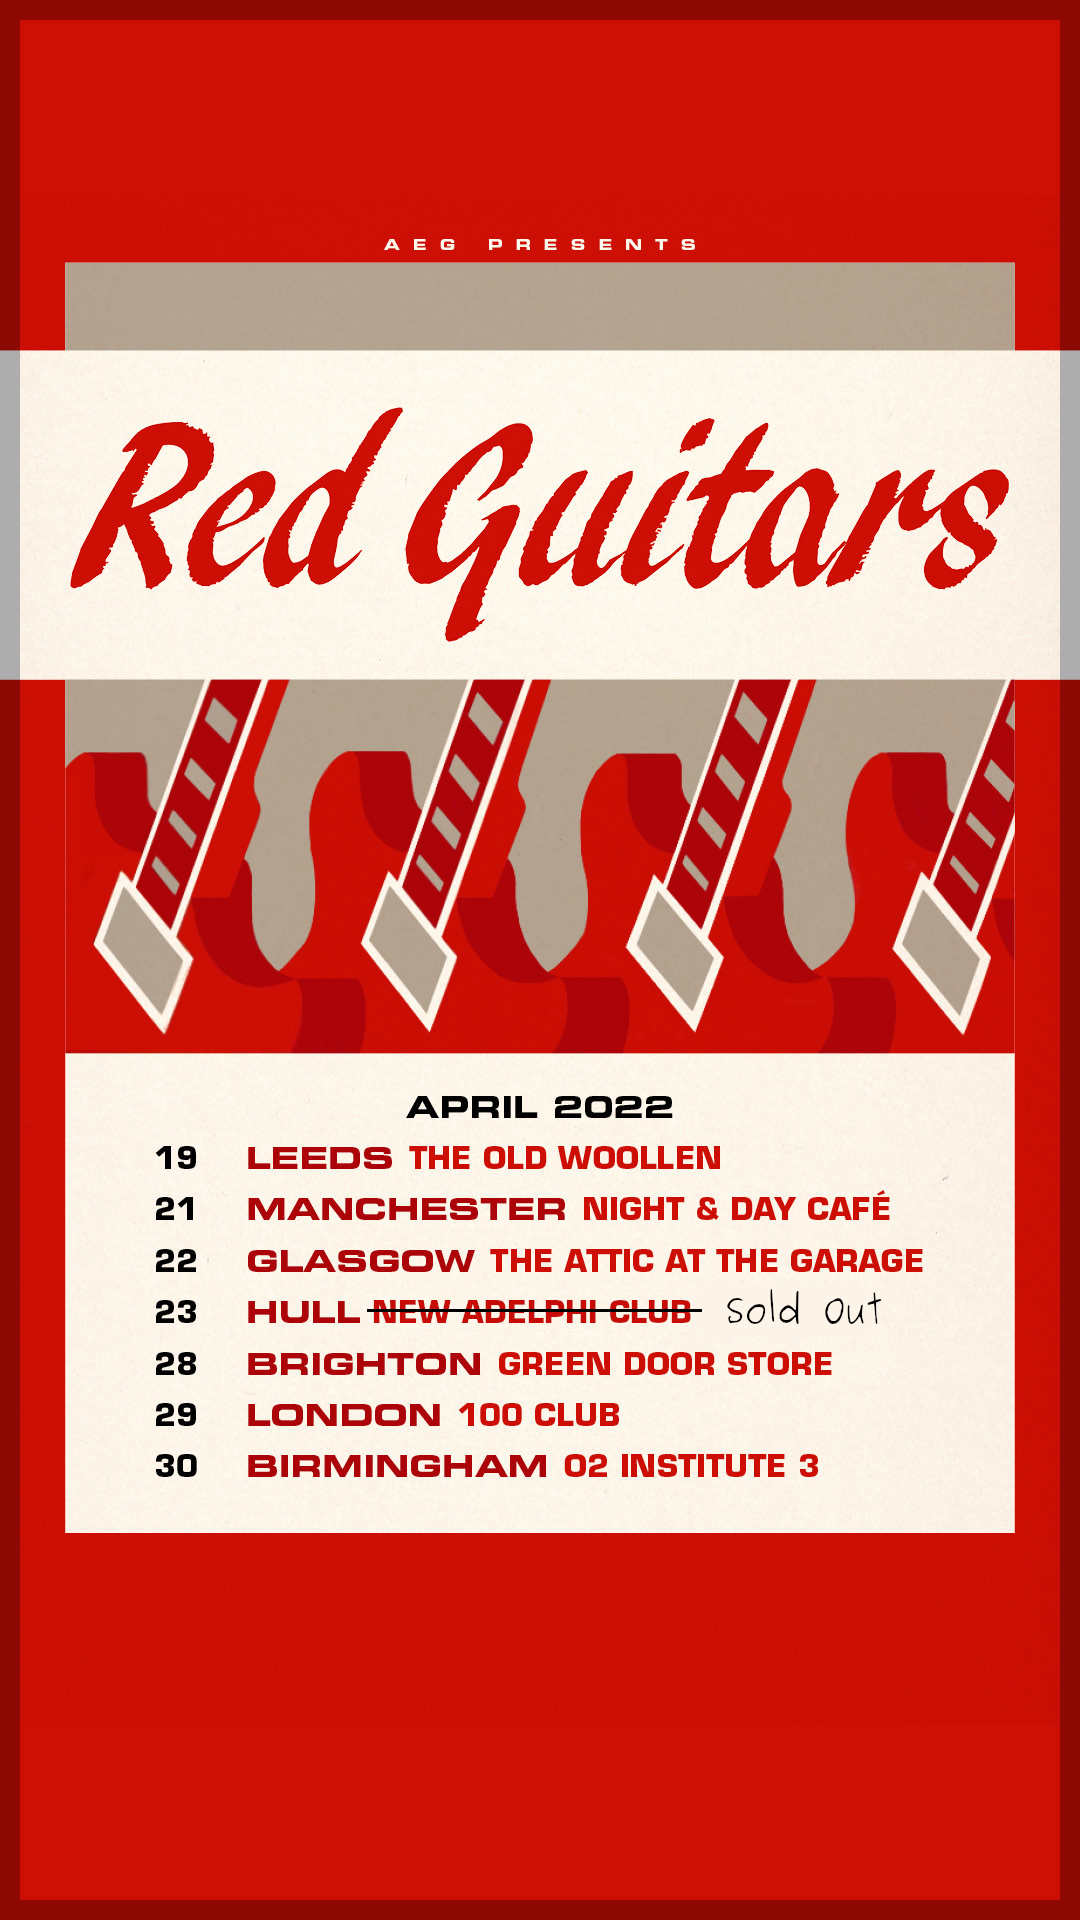 Red Guitars UK Tour dates April 2022.